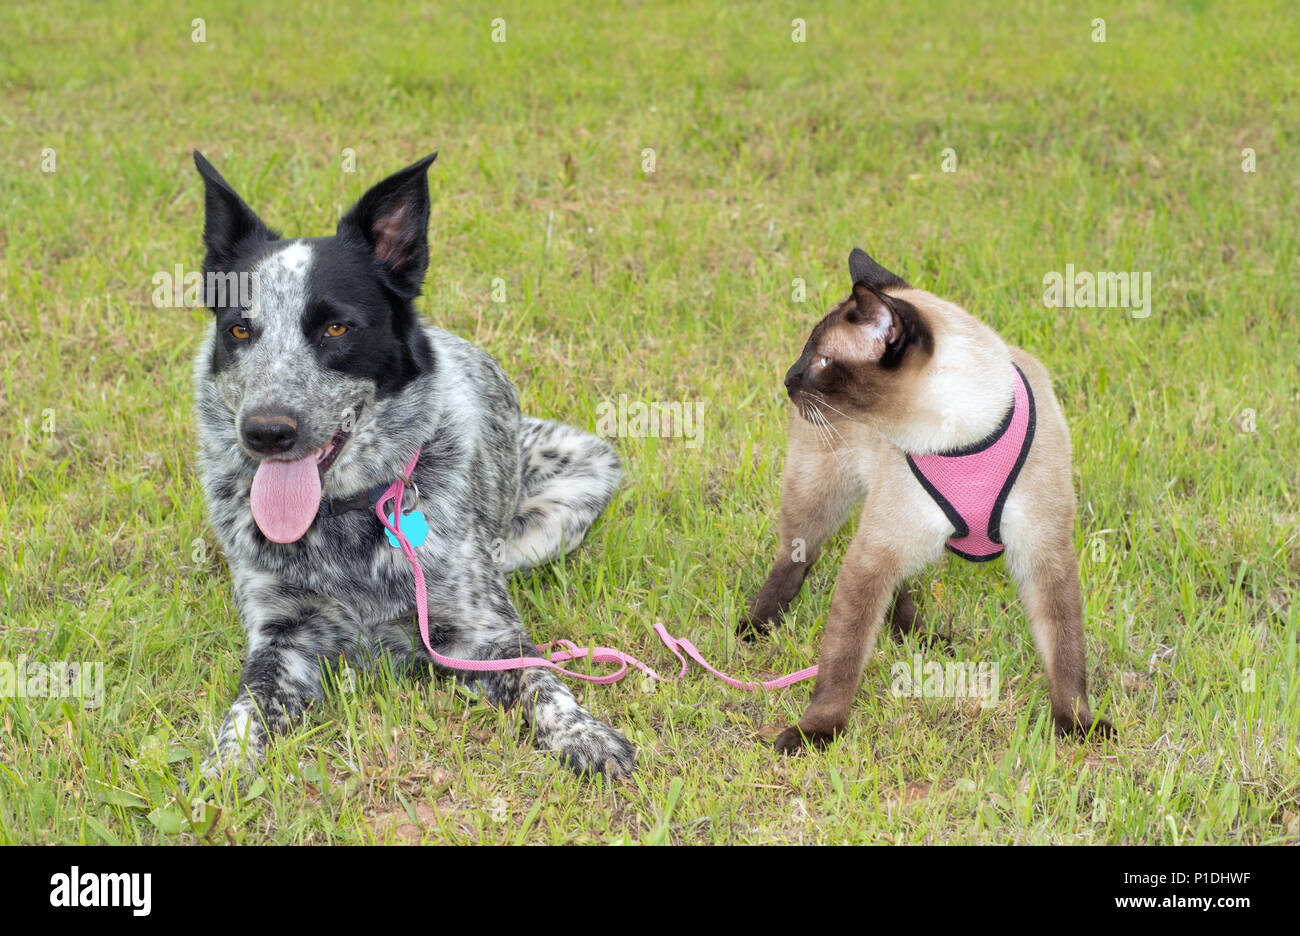 Spotted dog noir et blanc à l'extérieur dans l'herbe avec un chat siamois portant un faisceau rose Banque D'Images